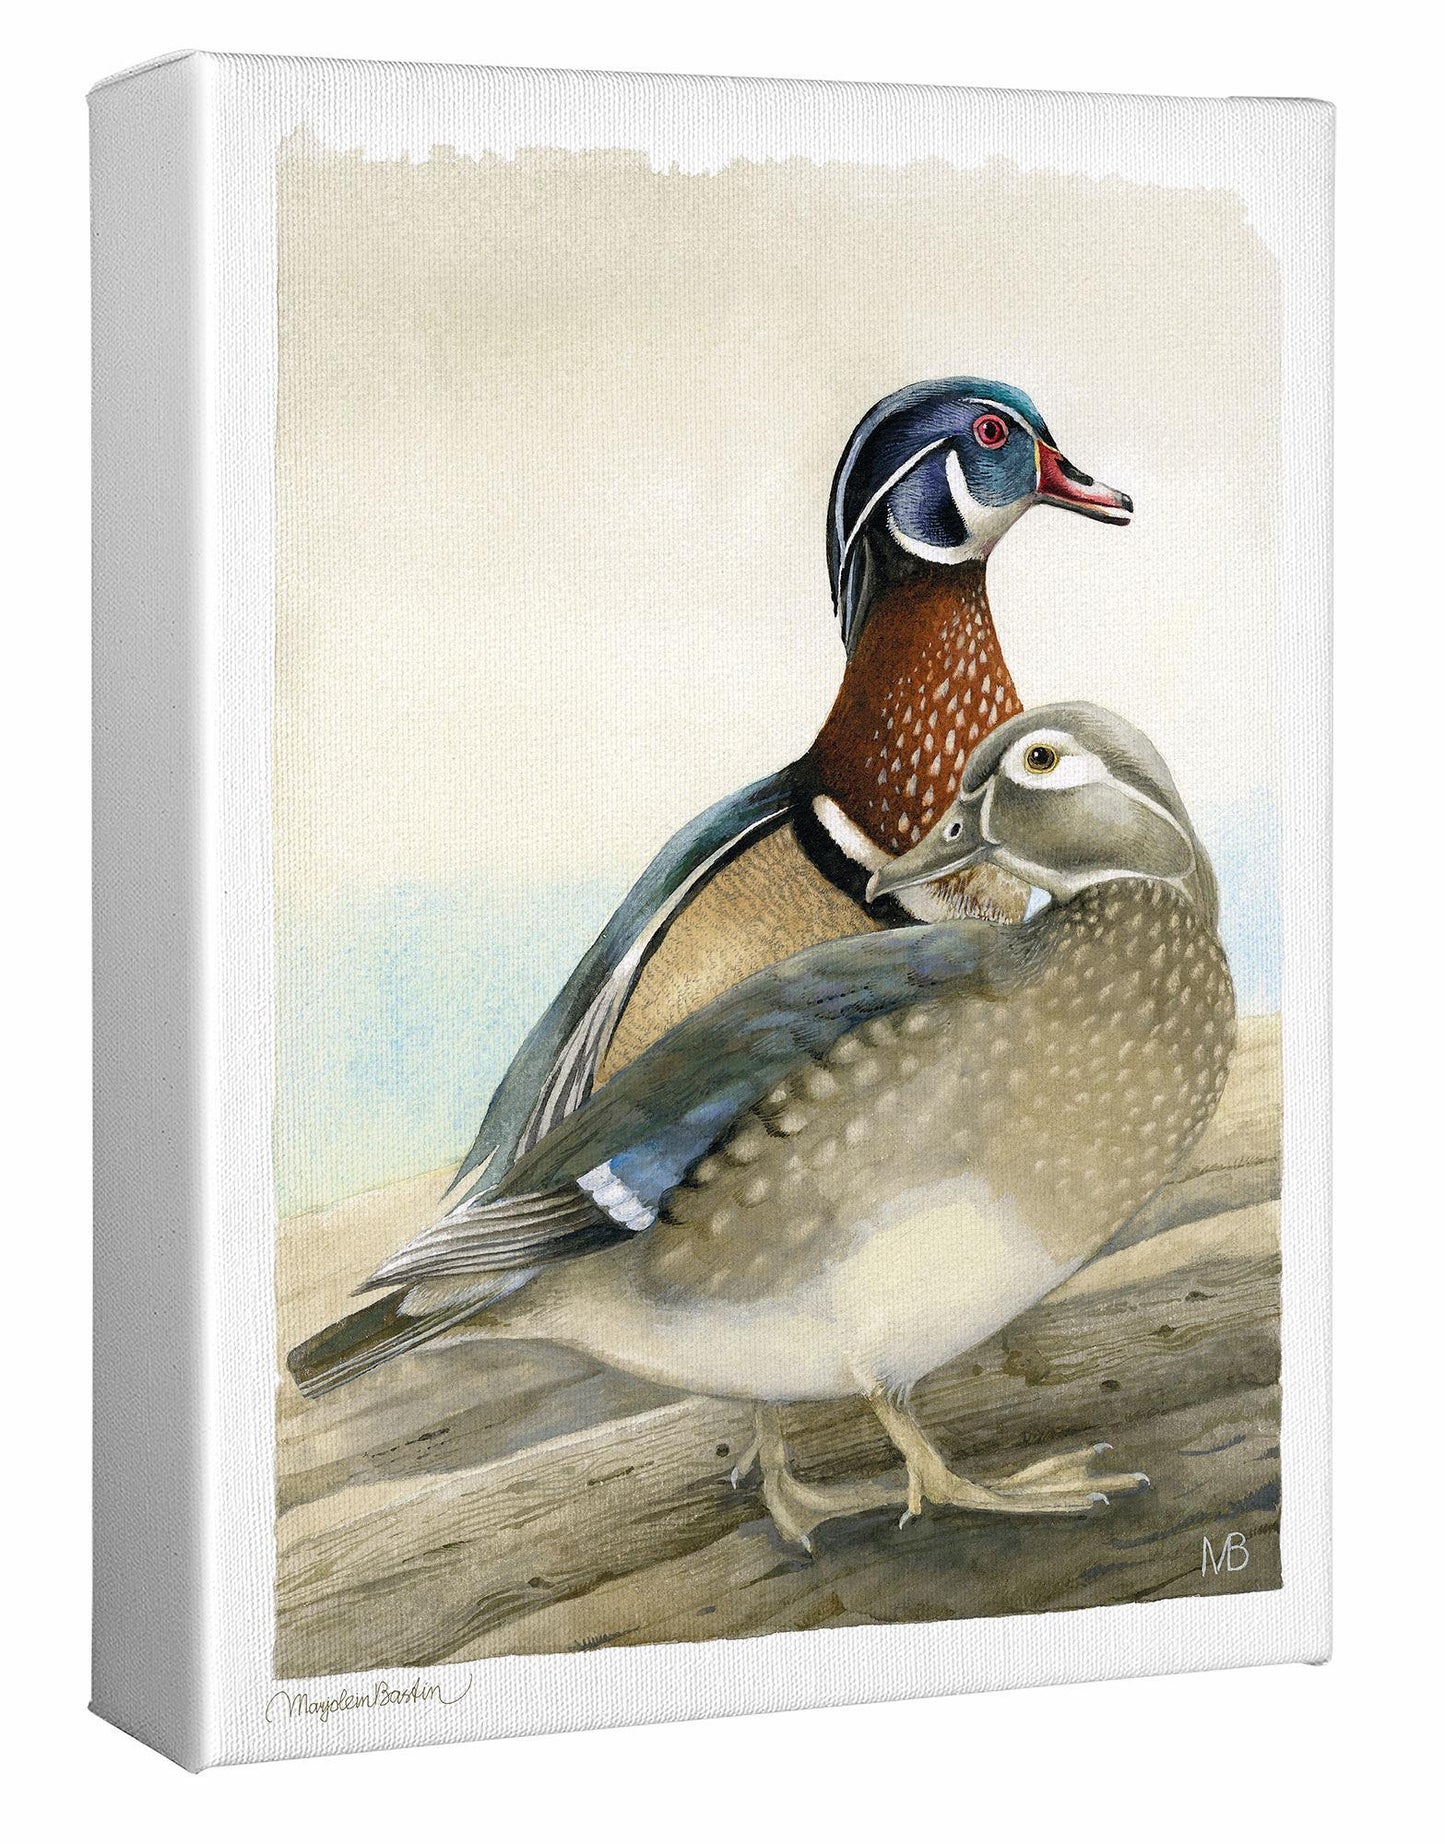 My Dear Wood Ducks Gallery Wrapped Canvas - Wild Wings